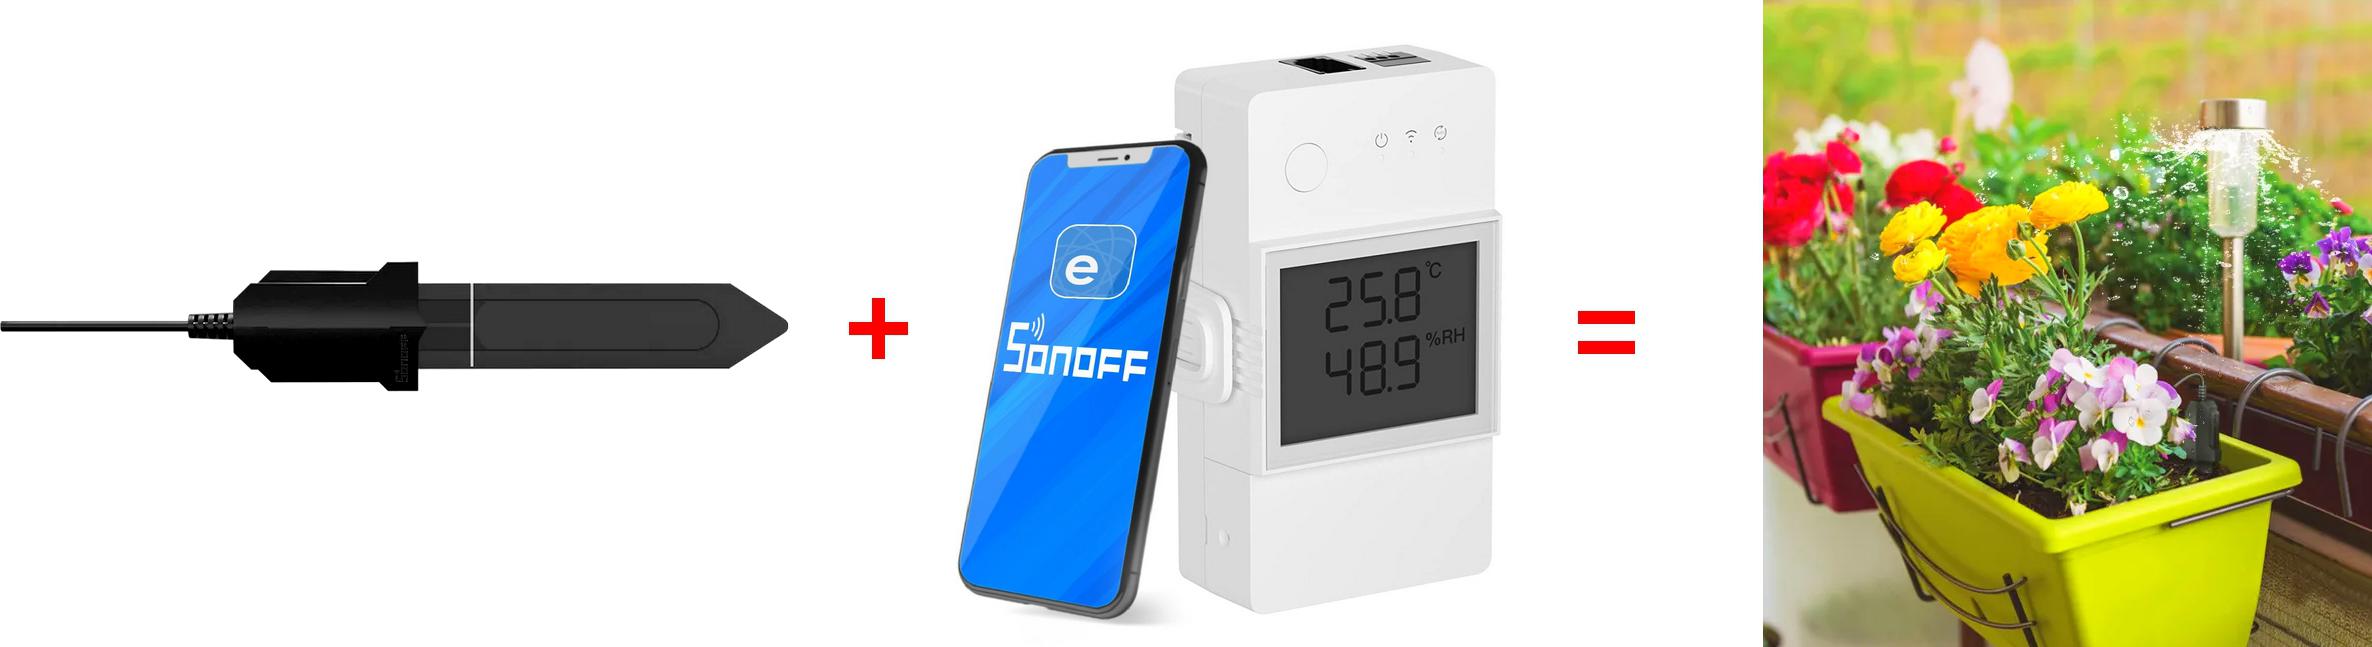 UWAGA: URZĄDZENIE WYMAGA POŁĄCZENIA Z PRZEKAŹNIKIEM Wi-Fi Sonoff - np. z modelem Sonoff TH Elite!!!